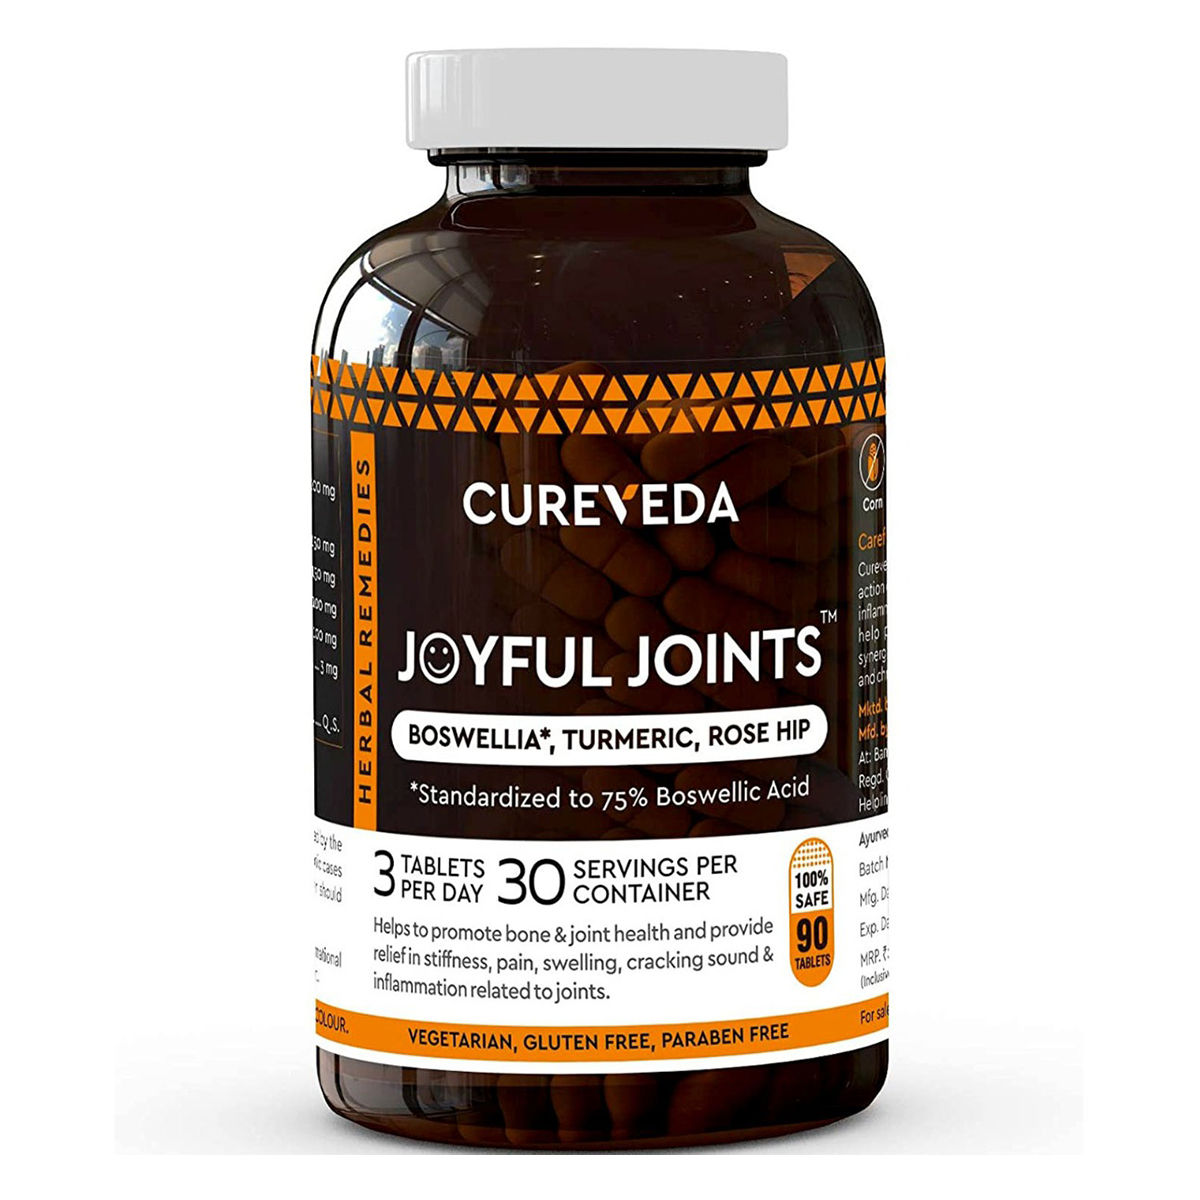 Buy Cureveda Joyful Joints, 90 Tablets Online